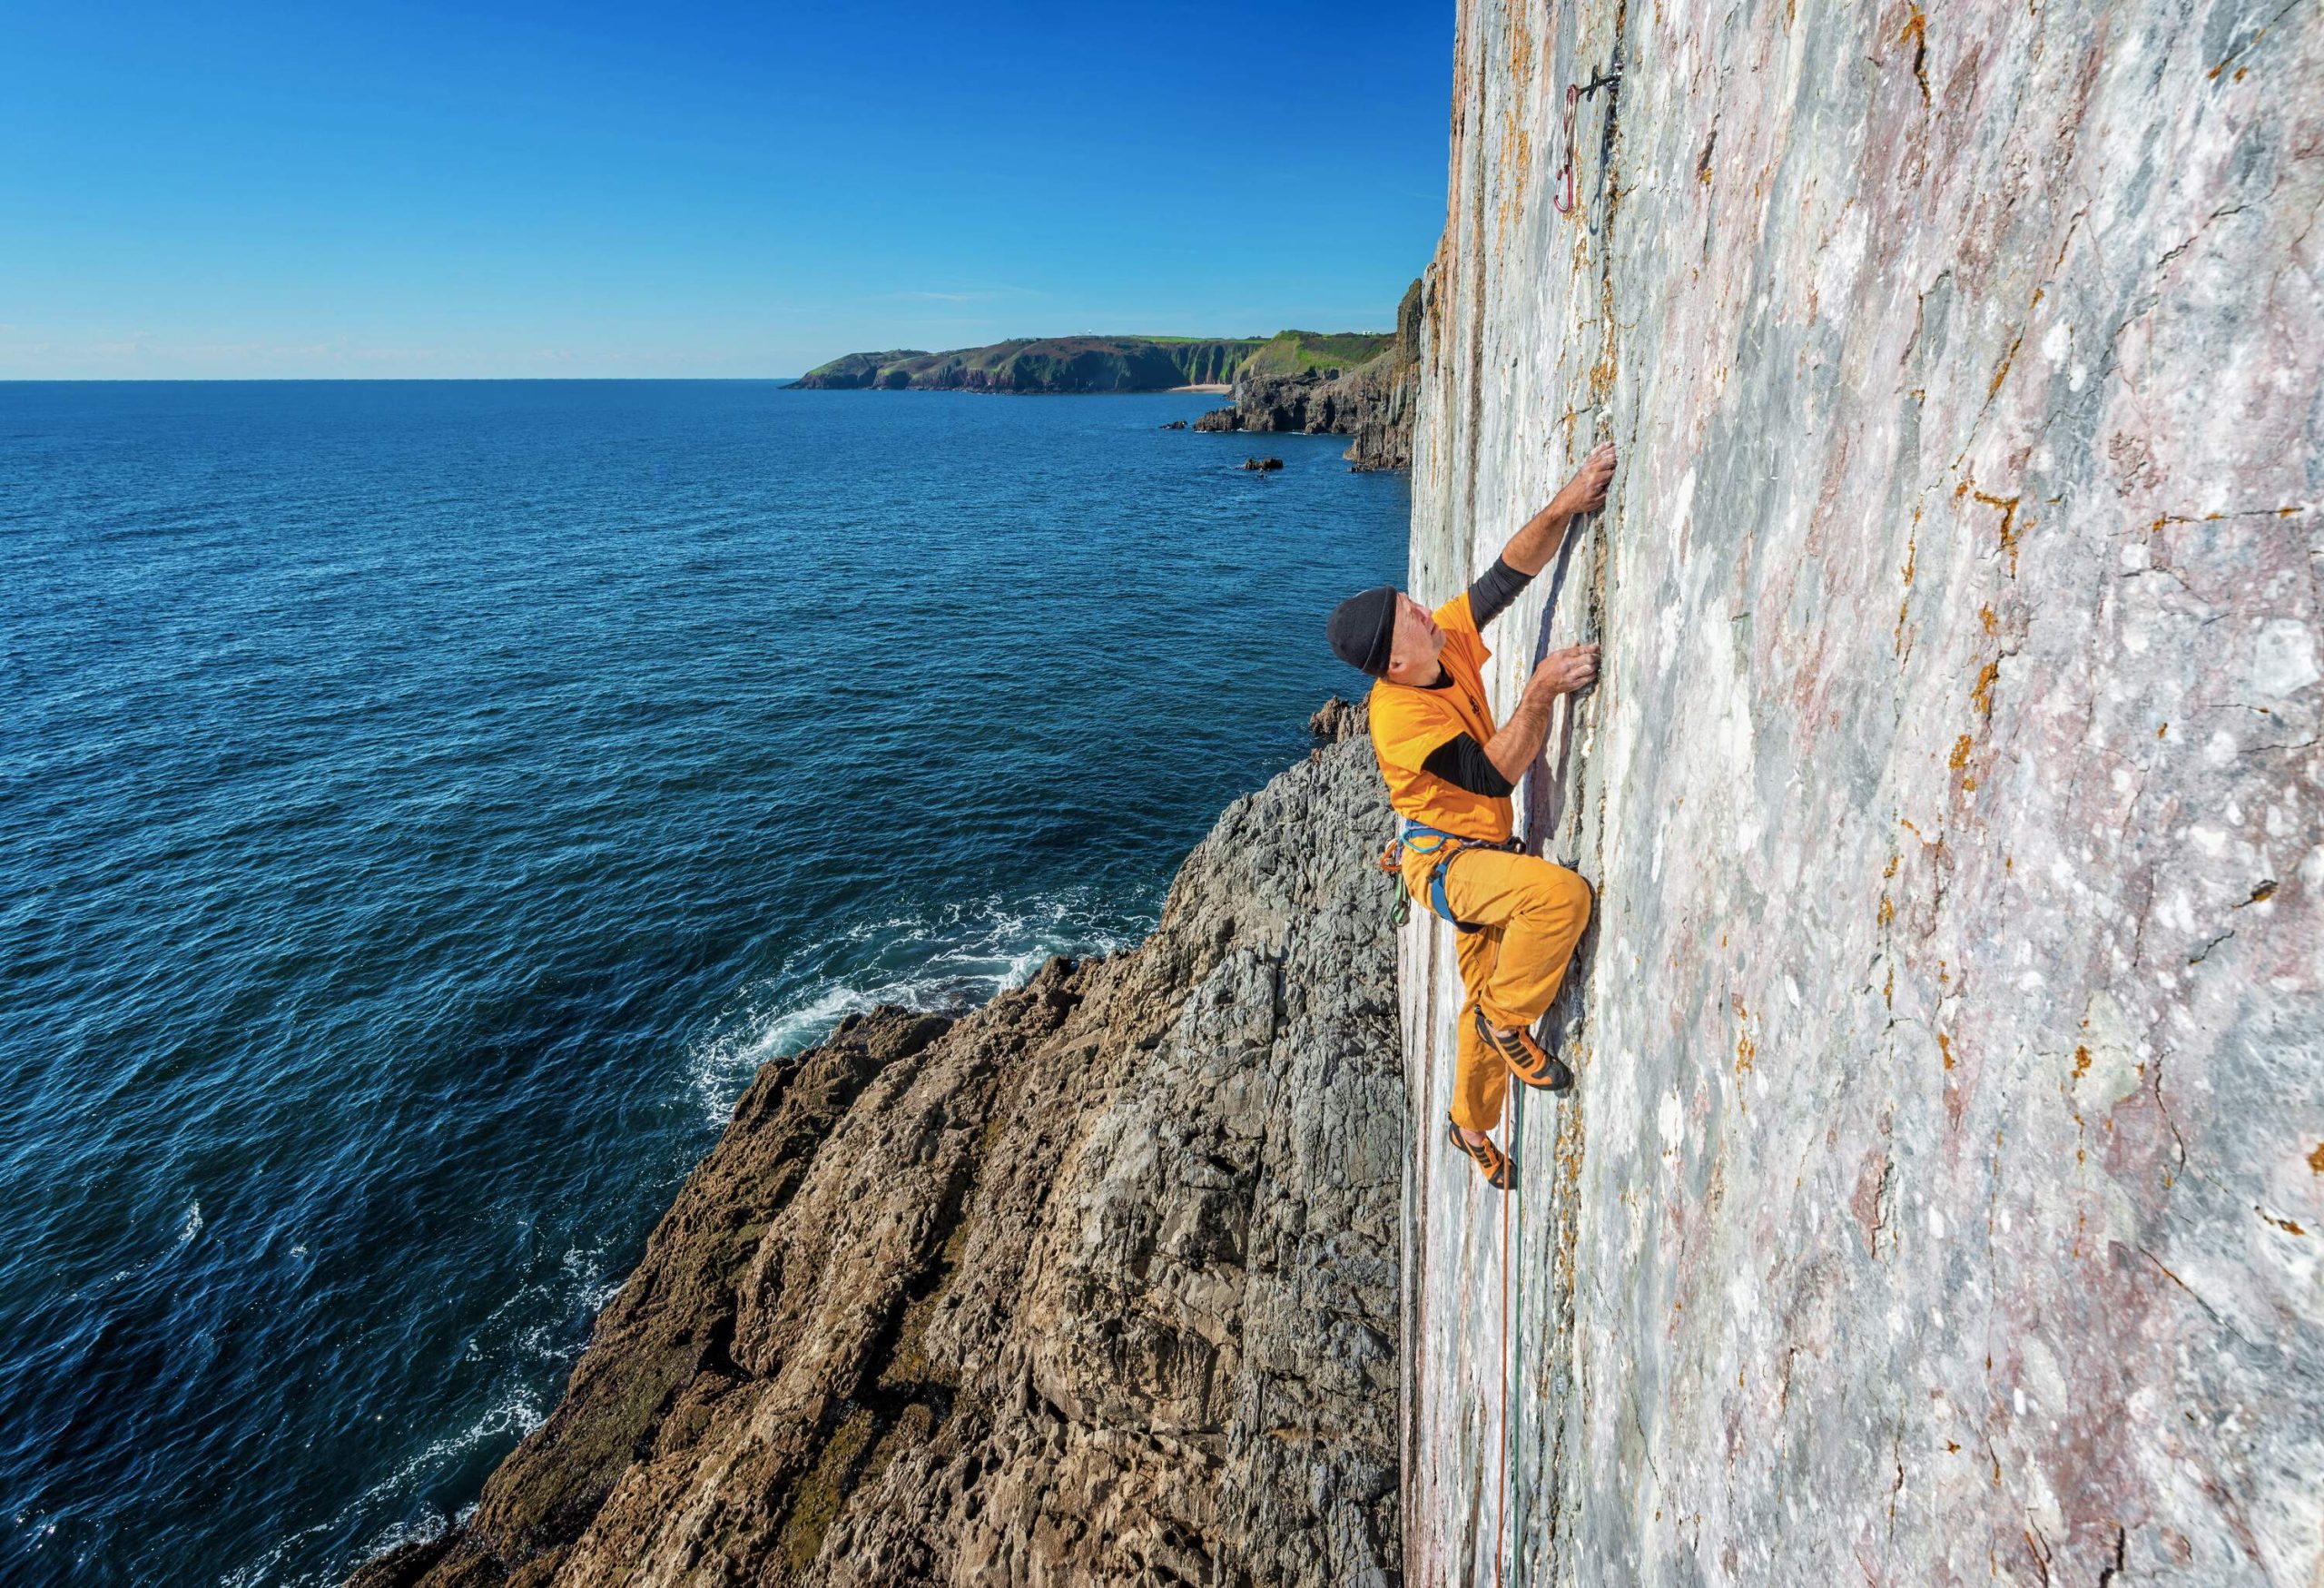 A man climbs the rock cliff alongside the sea.